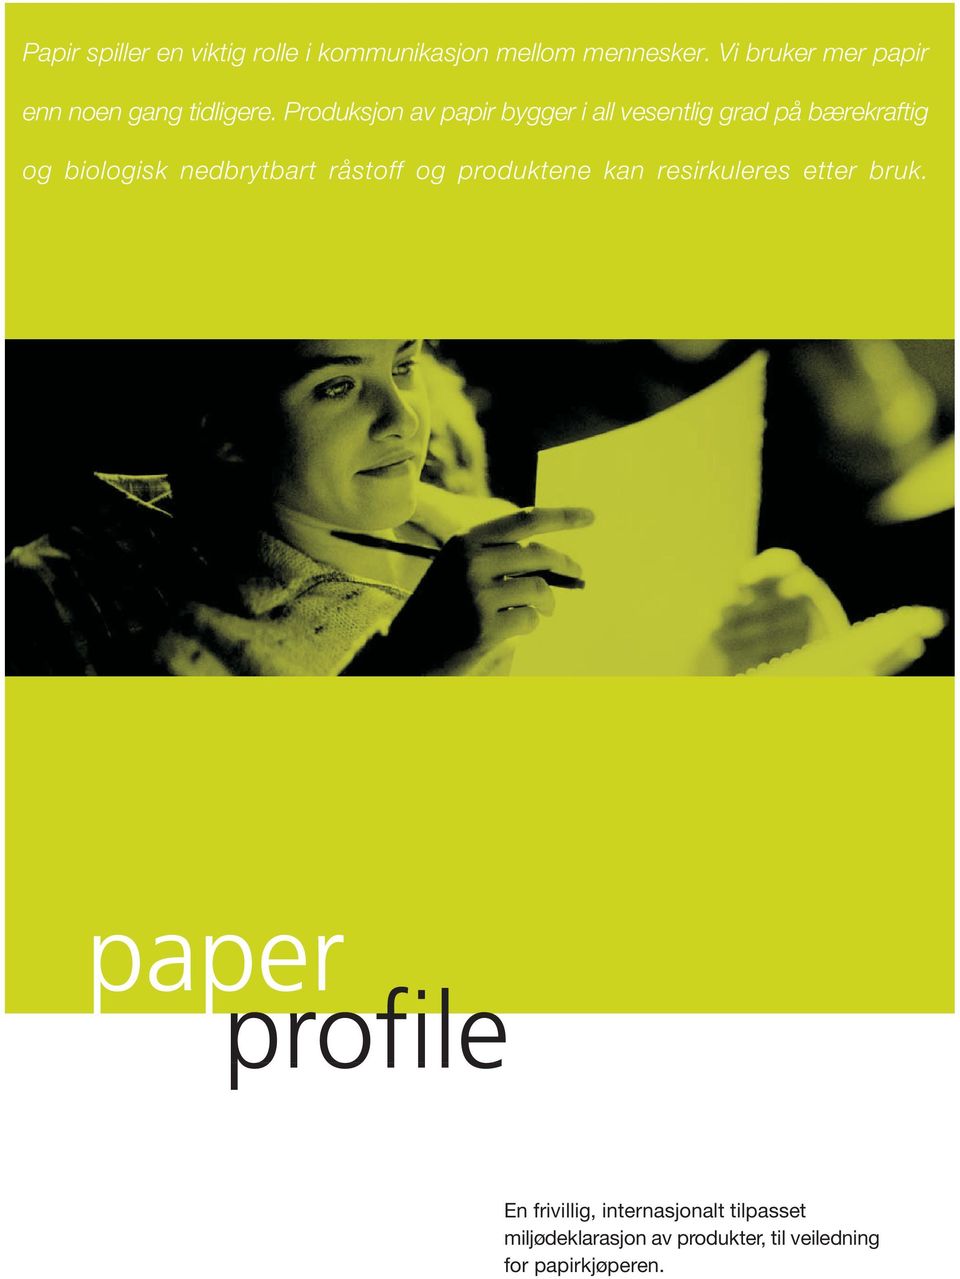 Produksjon av papir bygger i all vesentlig grad på bærekraftig og biologisk nedbrytbart